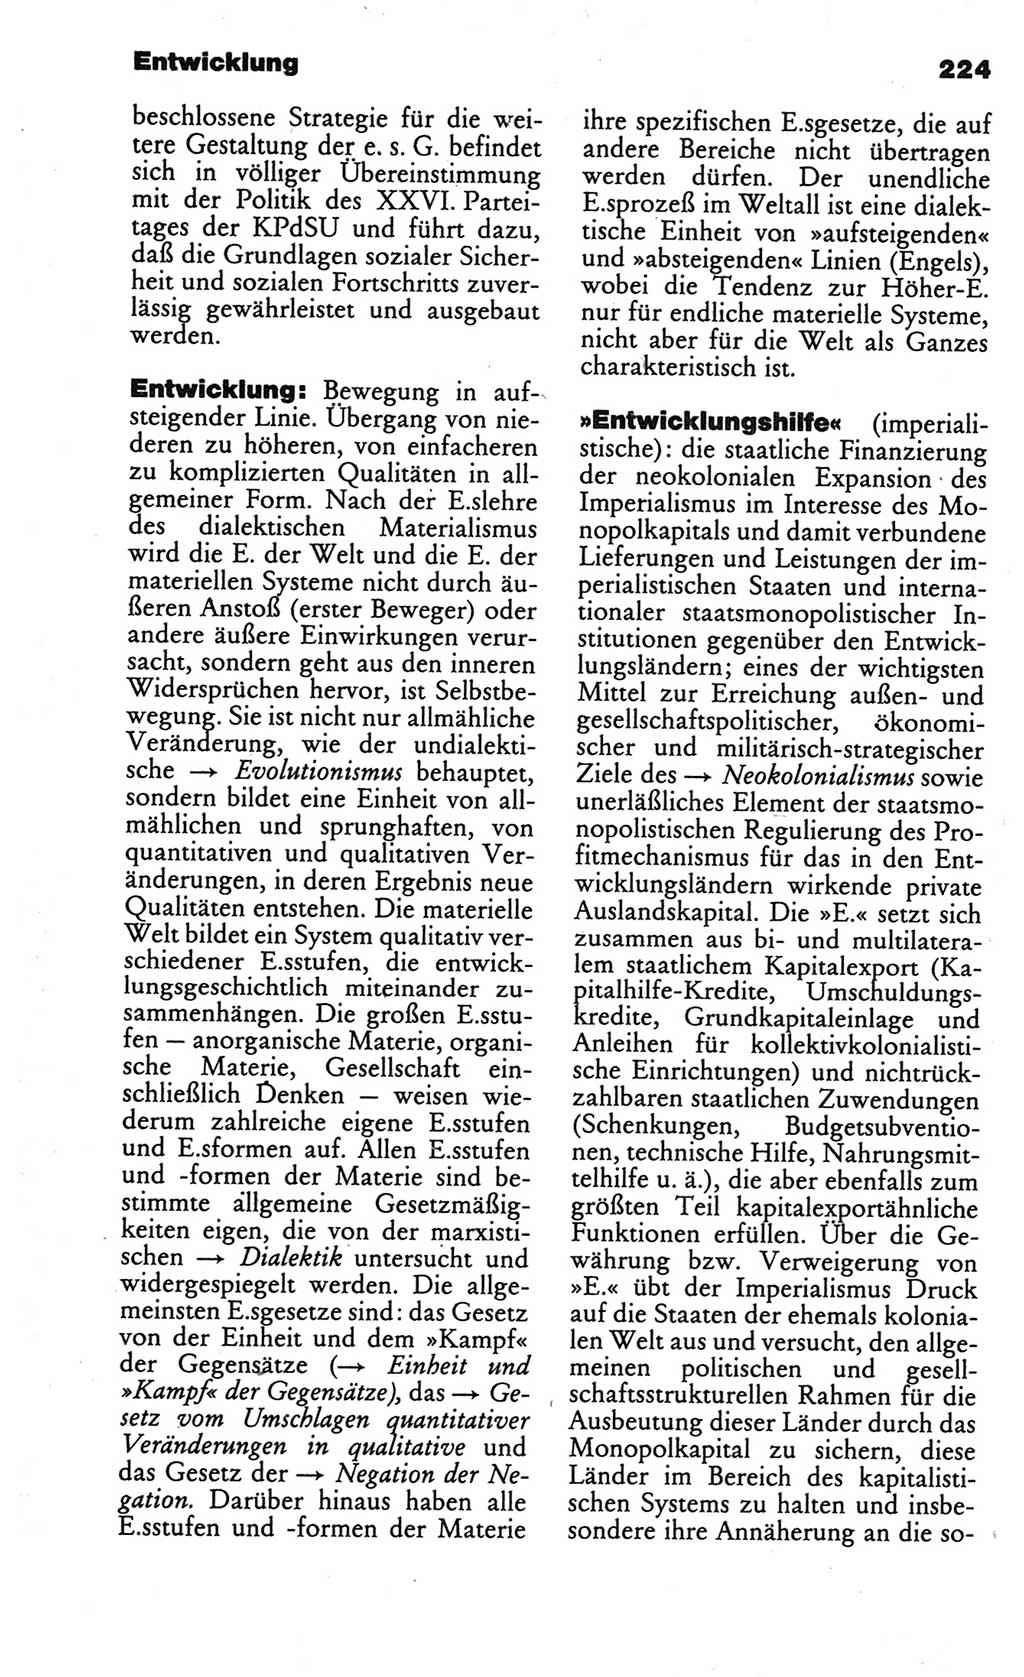 Kleines politisches Wörterbuch [Deutsche Demokratische Republik (DDR)] 1986, Seite 224 (Kl. pol. Wb. DDR 1986, S. 224)